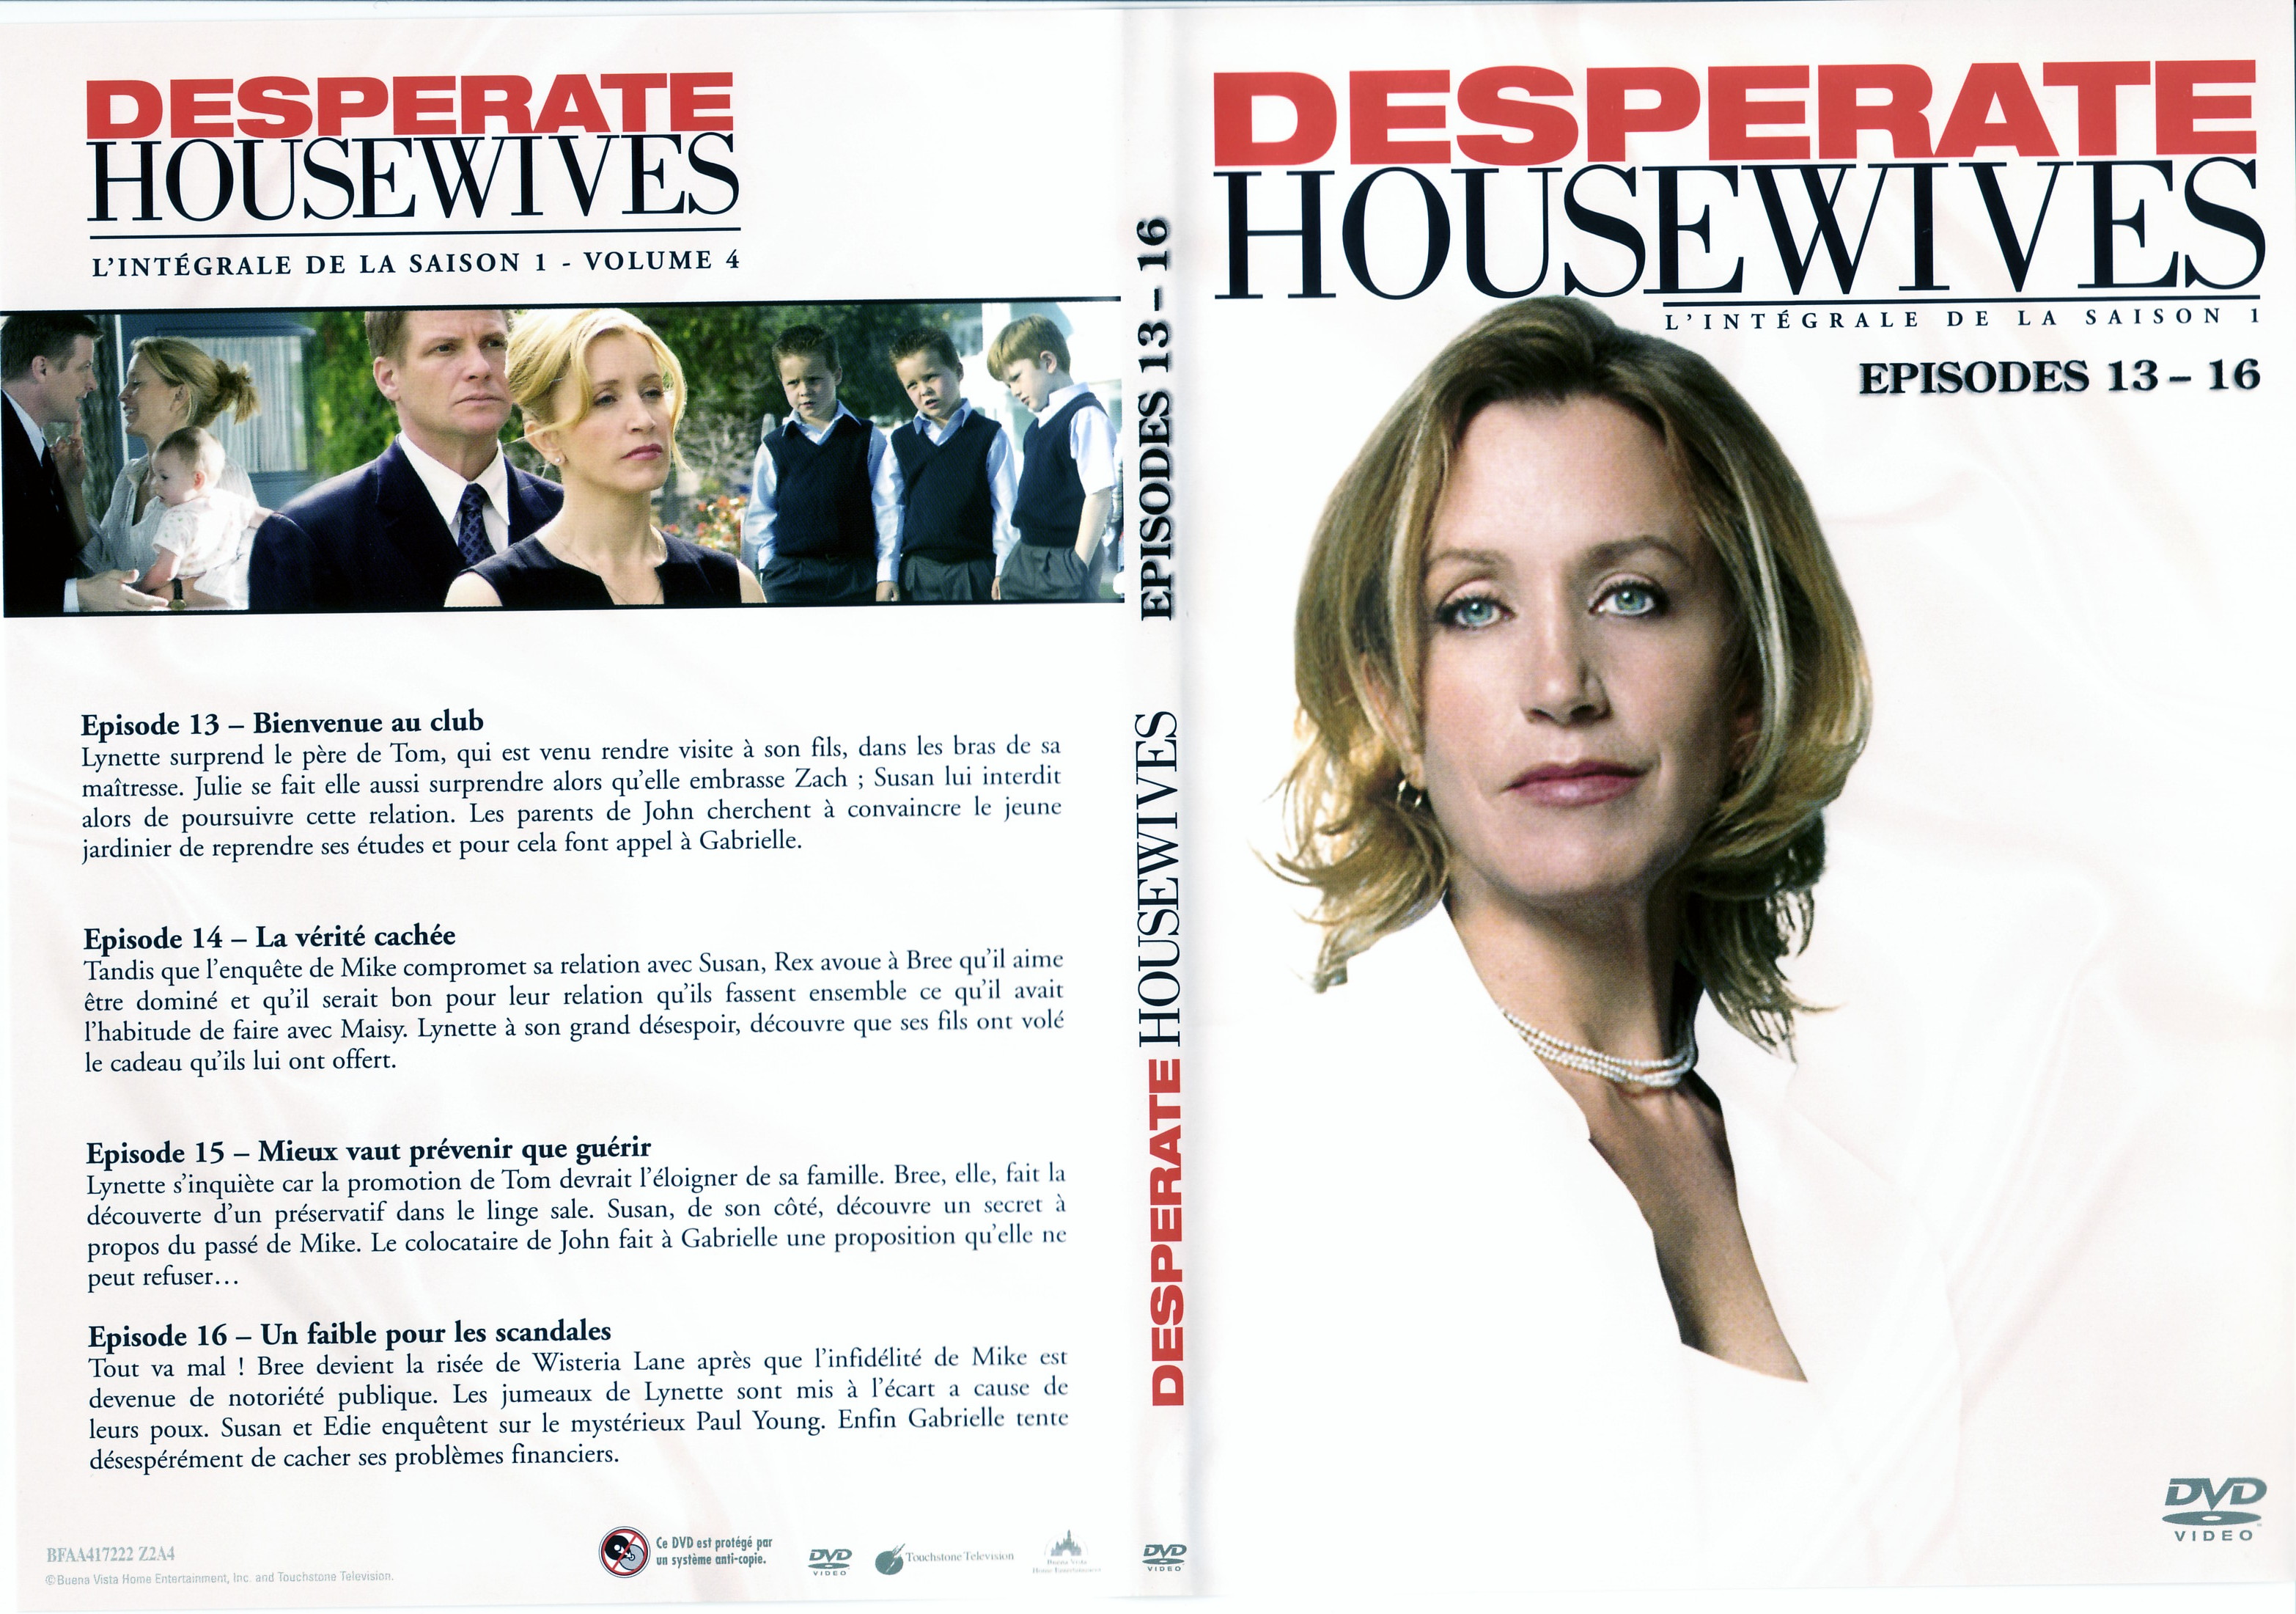 Jaquette DVD Desperate housewives Saison 1 vol 4